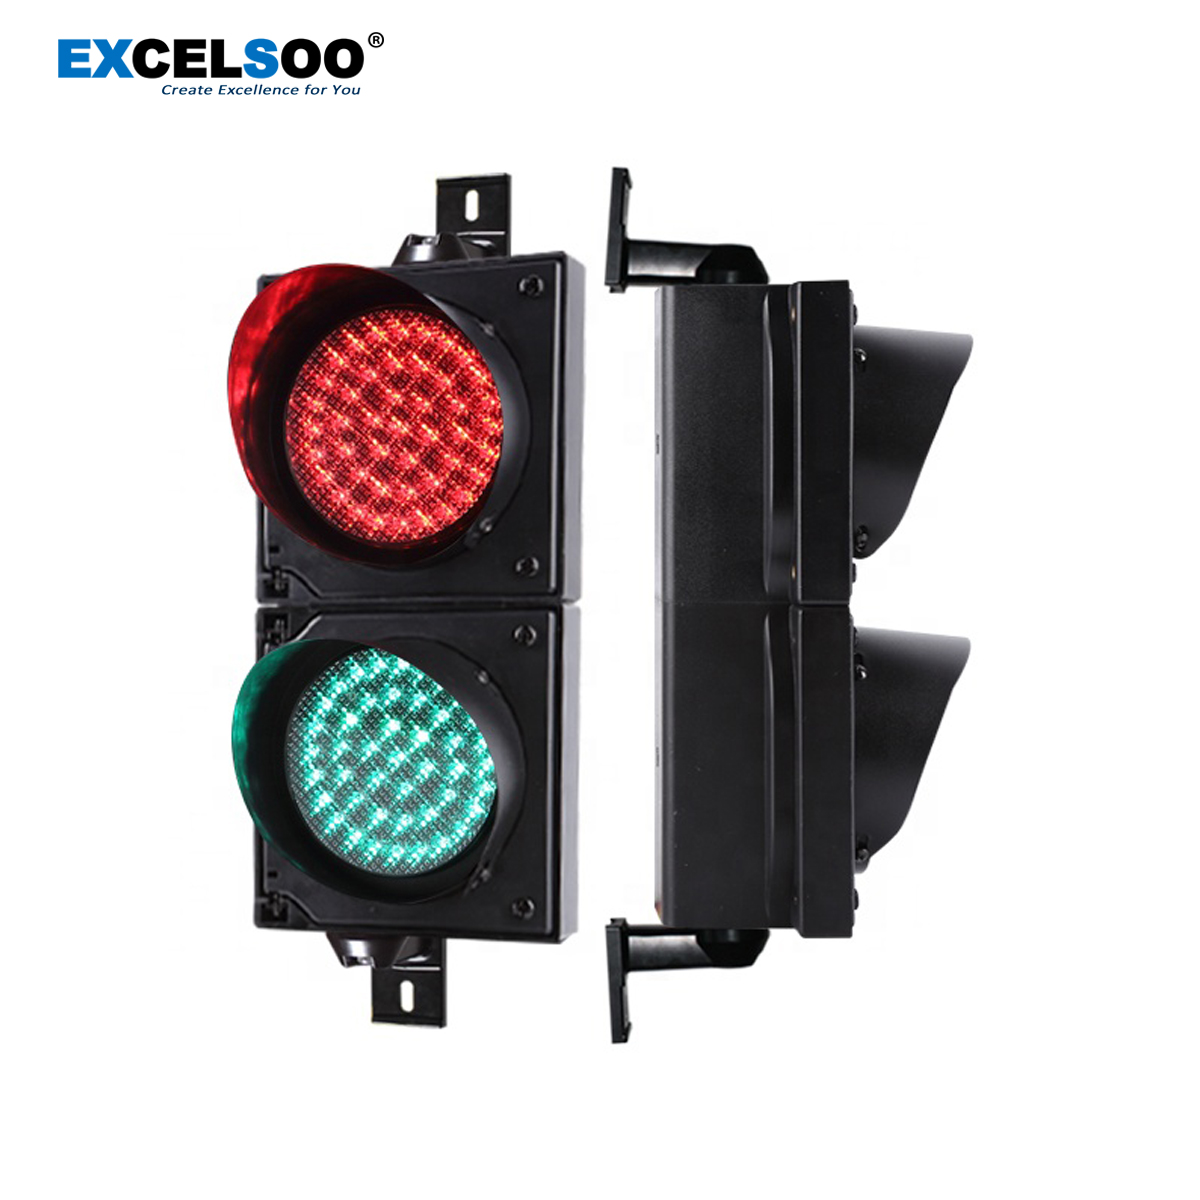 Excelsoo 100mm LED Traffic Light for Parking Barrier Gate EX-TFL112-2